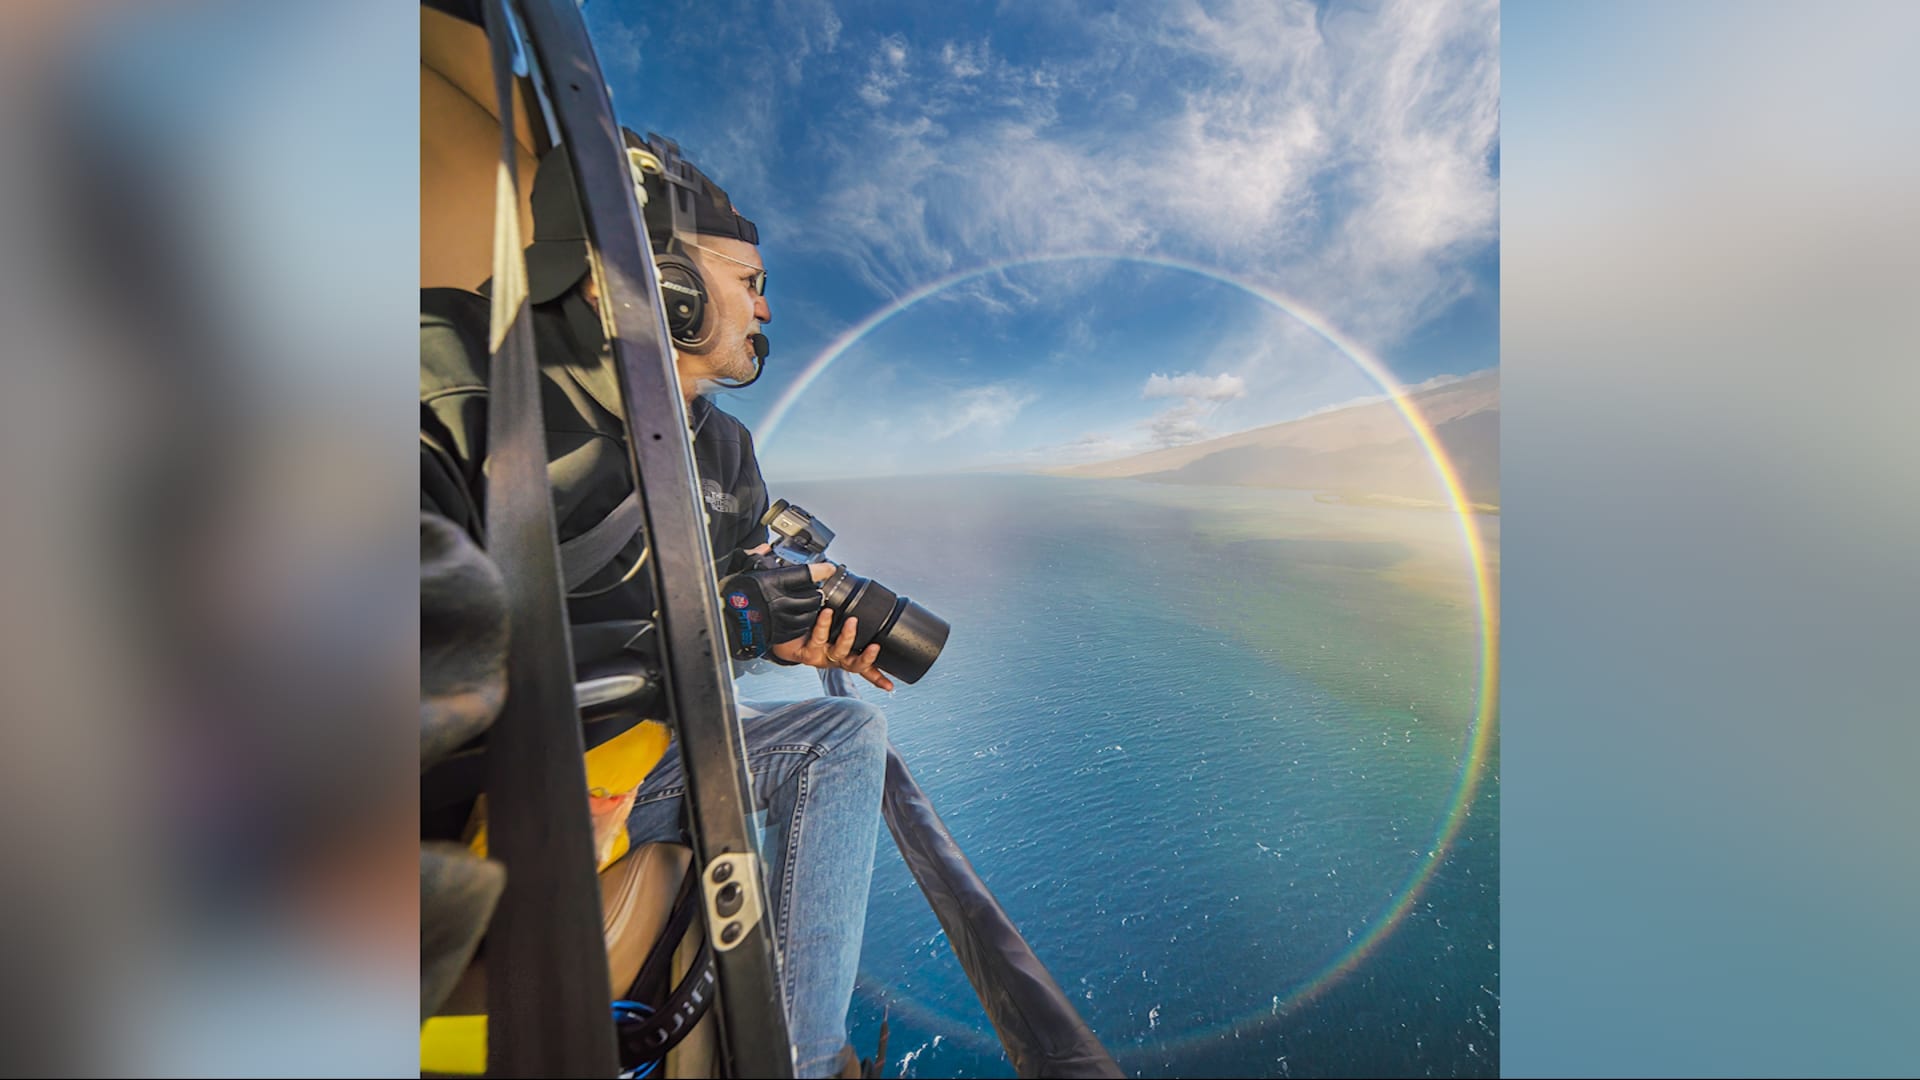 مصور يوثق أجمل "معجزة" طبيعية بالعالم من ارتفاع 3 آلاف قدم